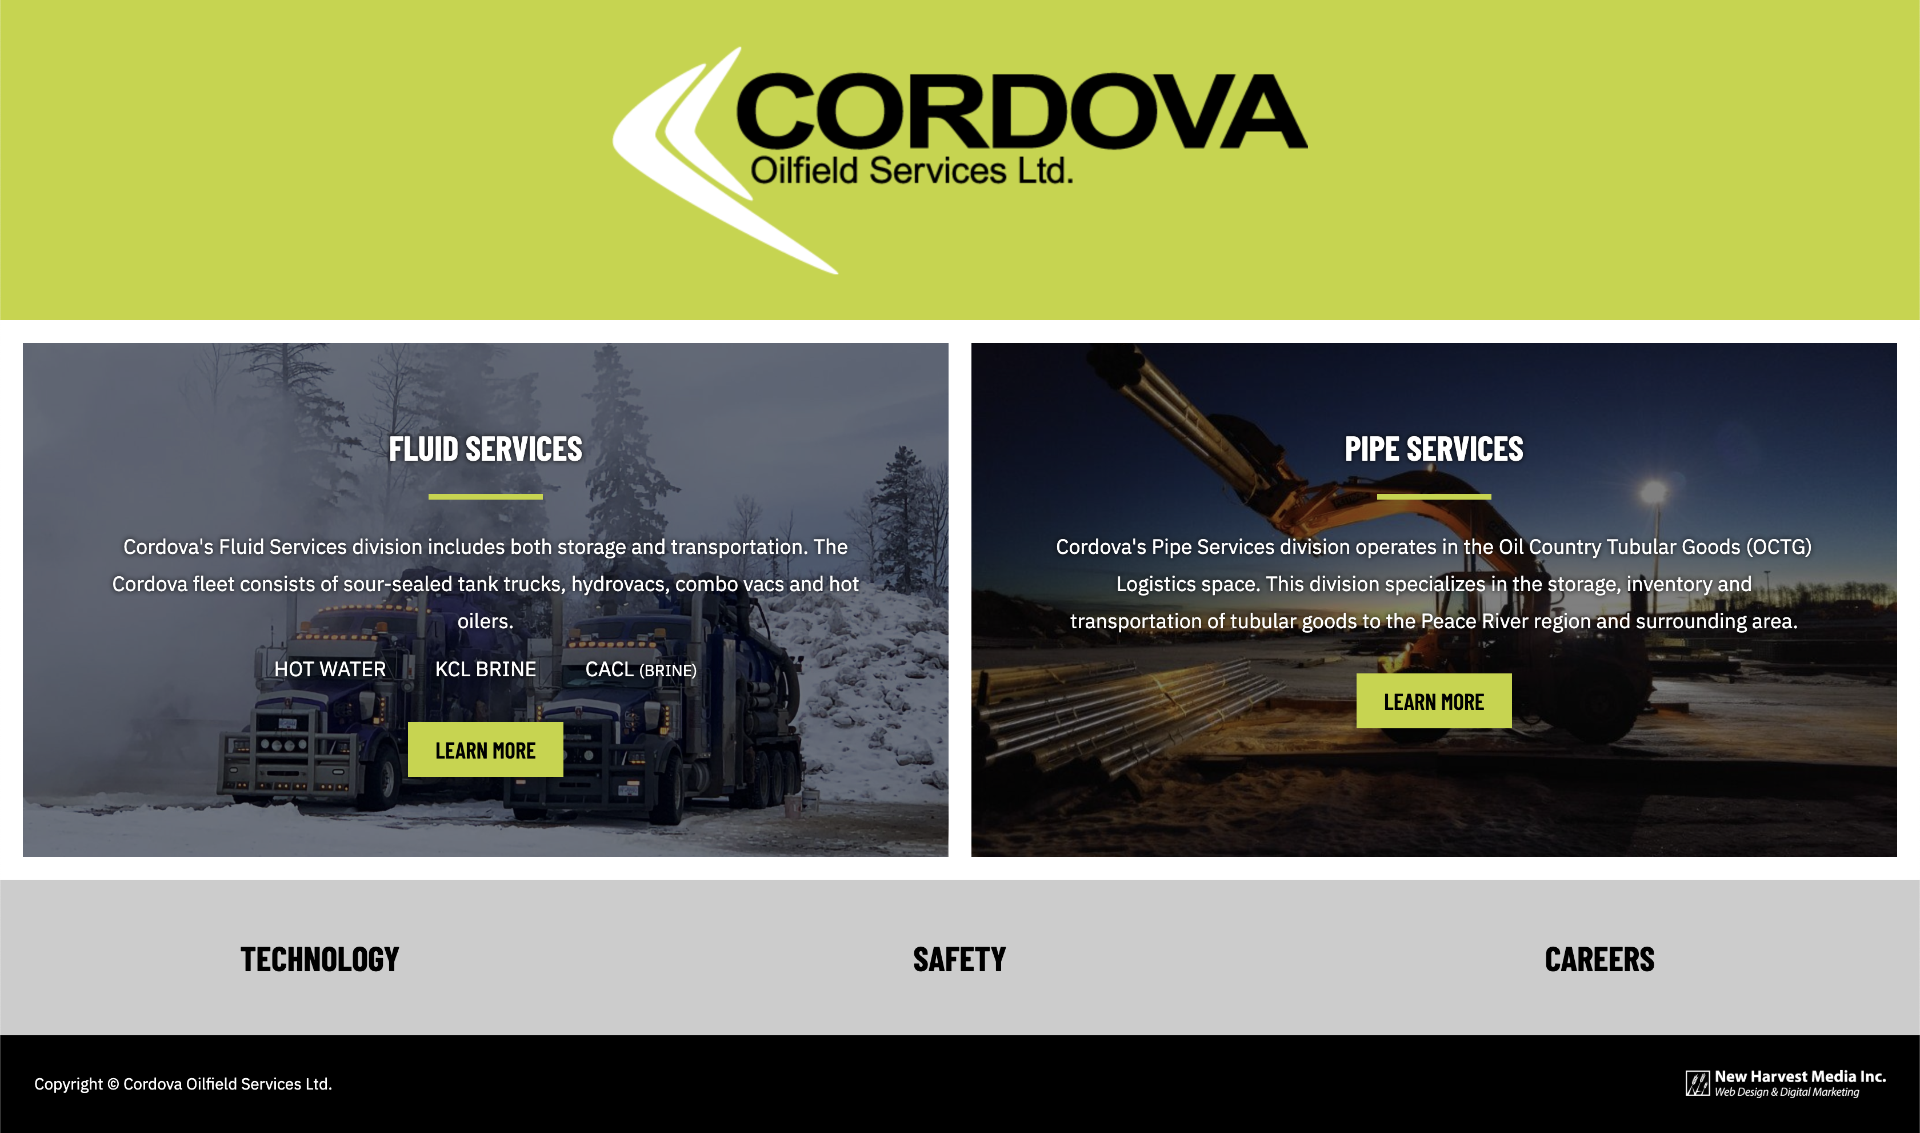 Cordova Oilfield Services Ltd.